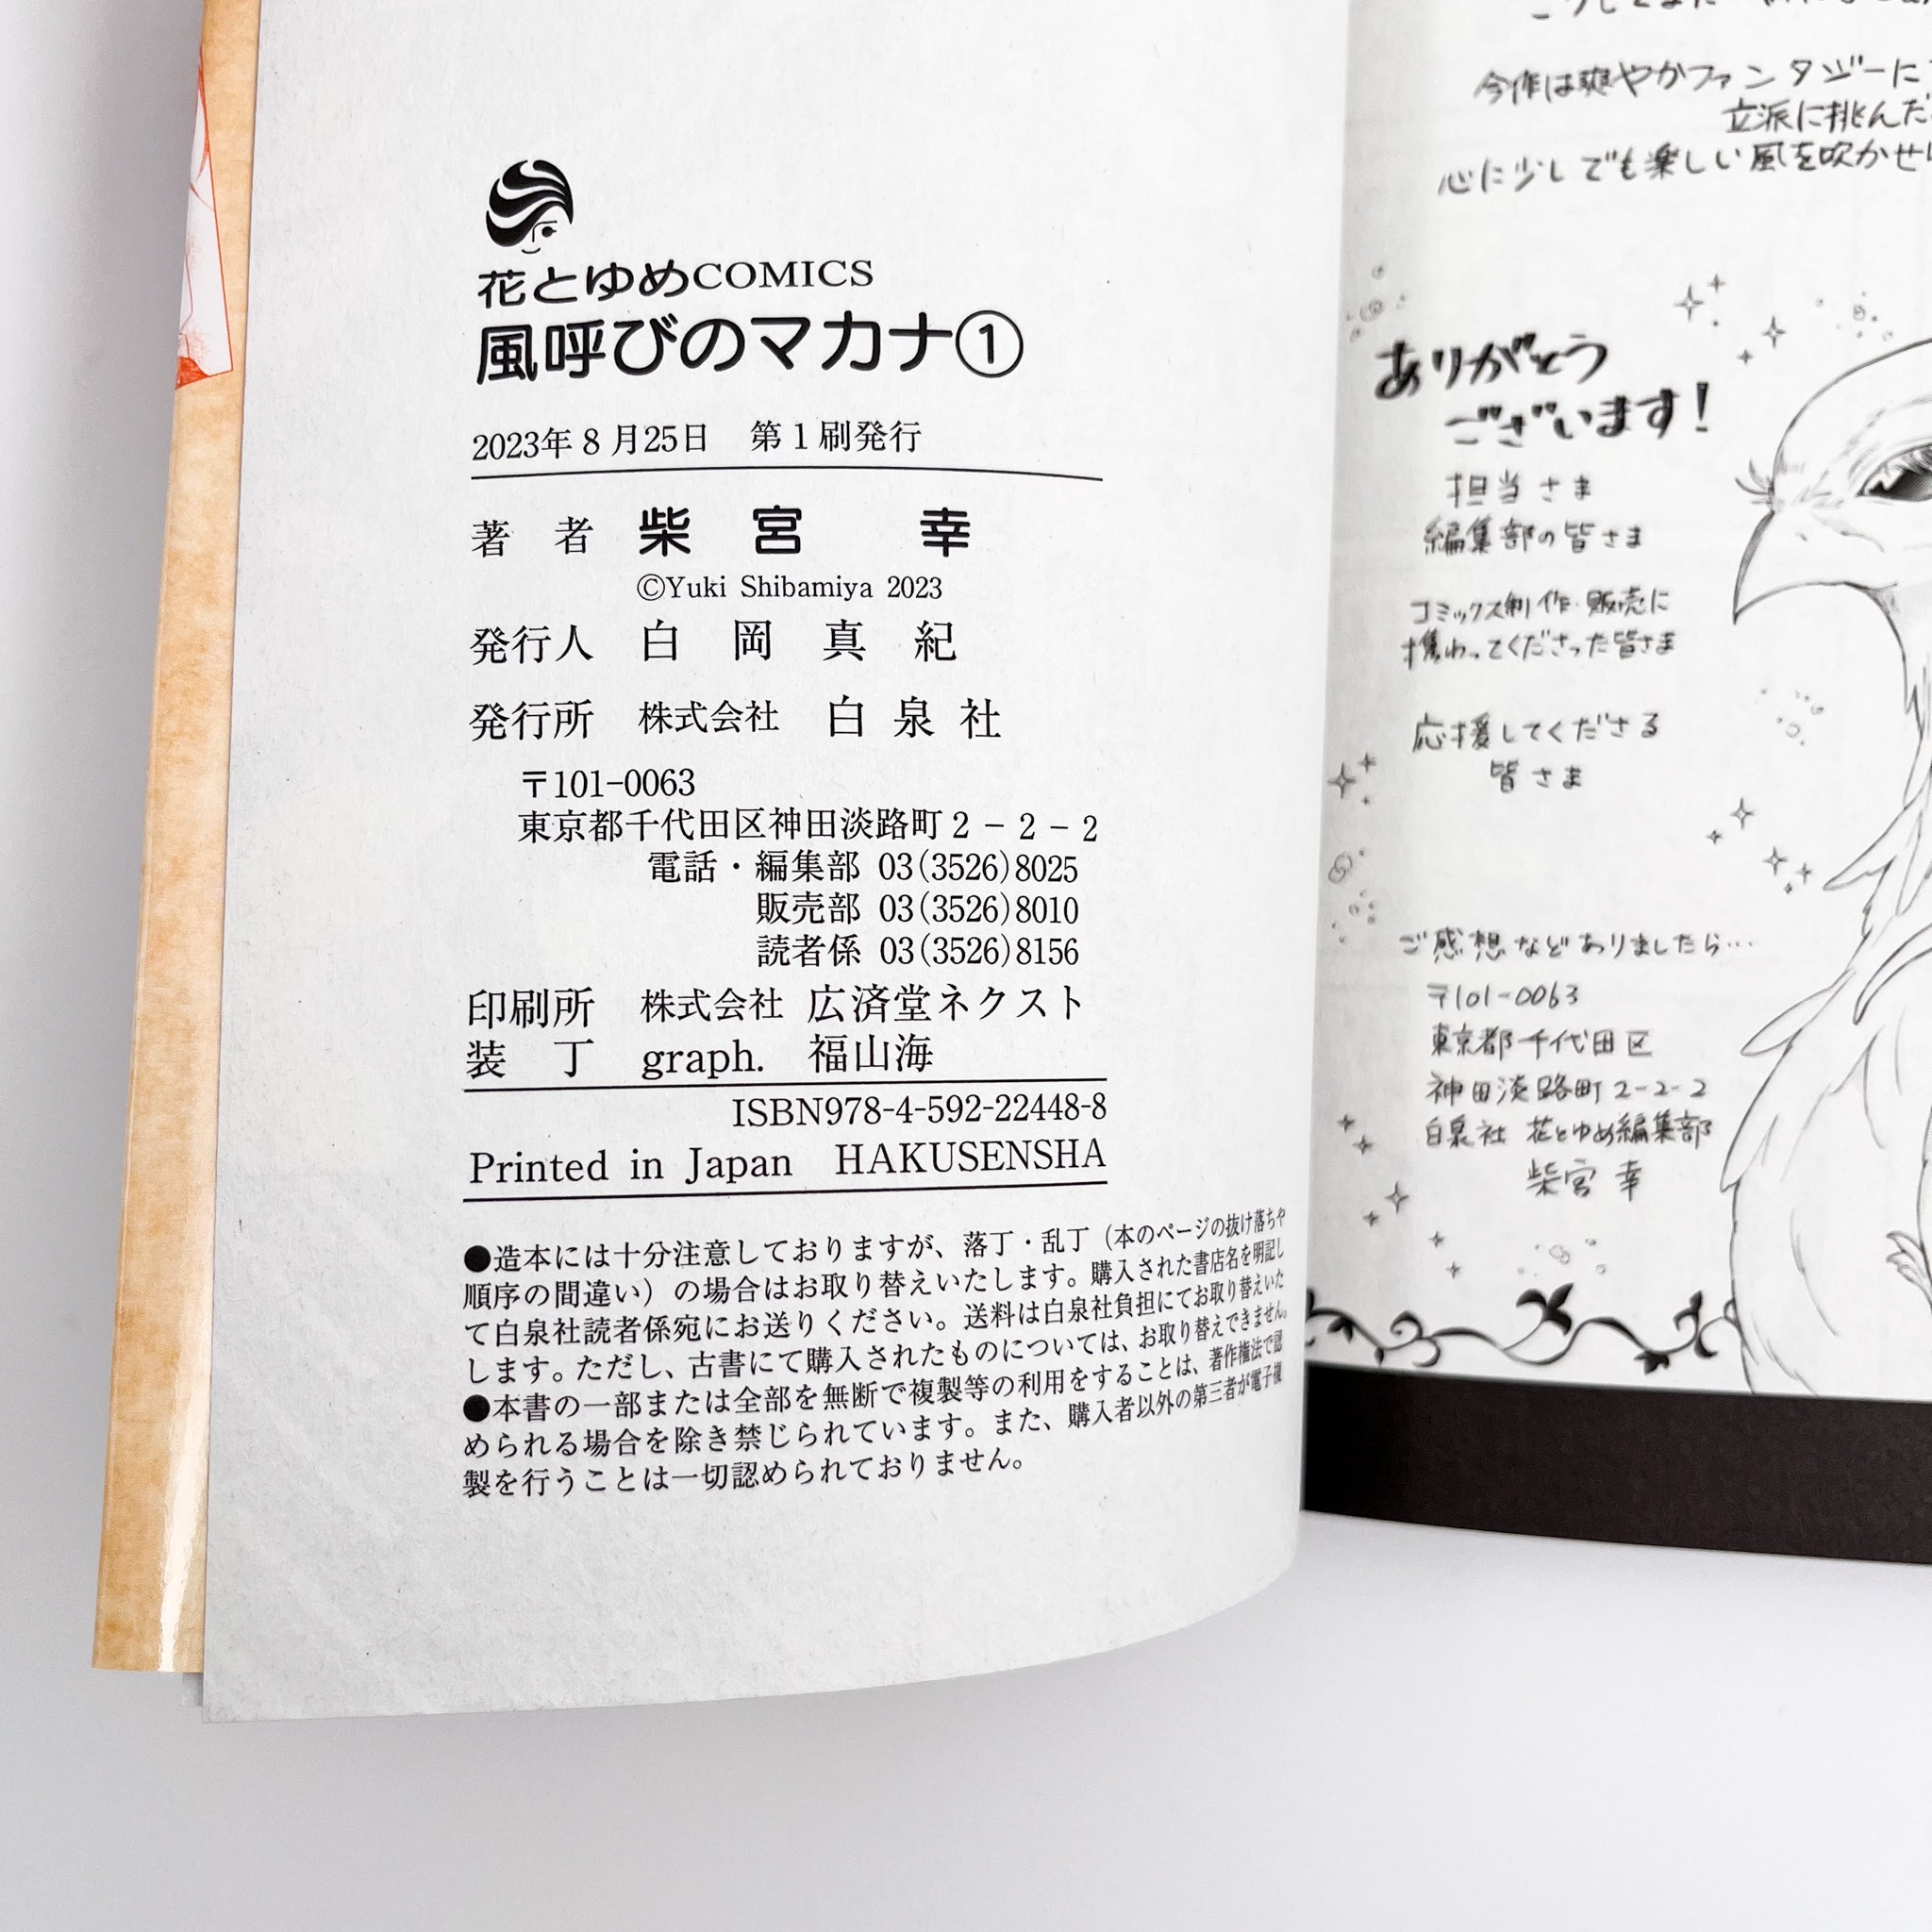 Kazeyobi no Makana Volume 1 information page